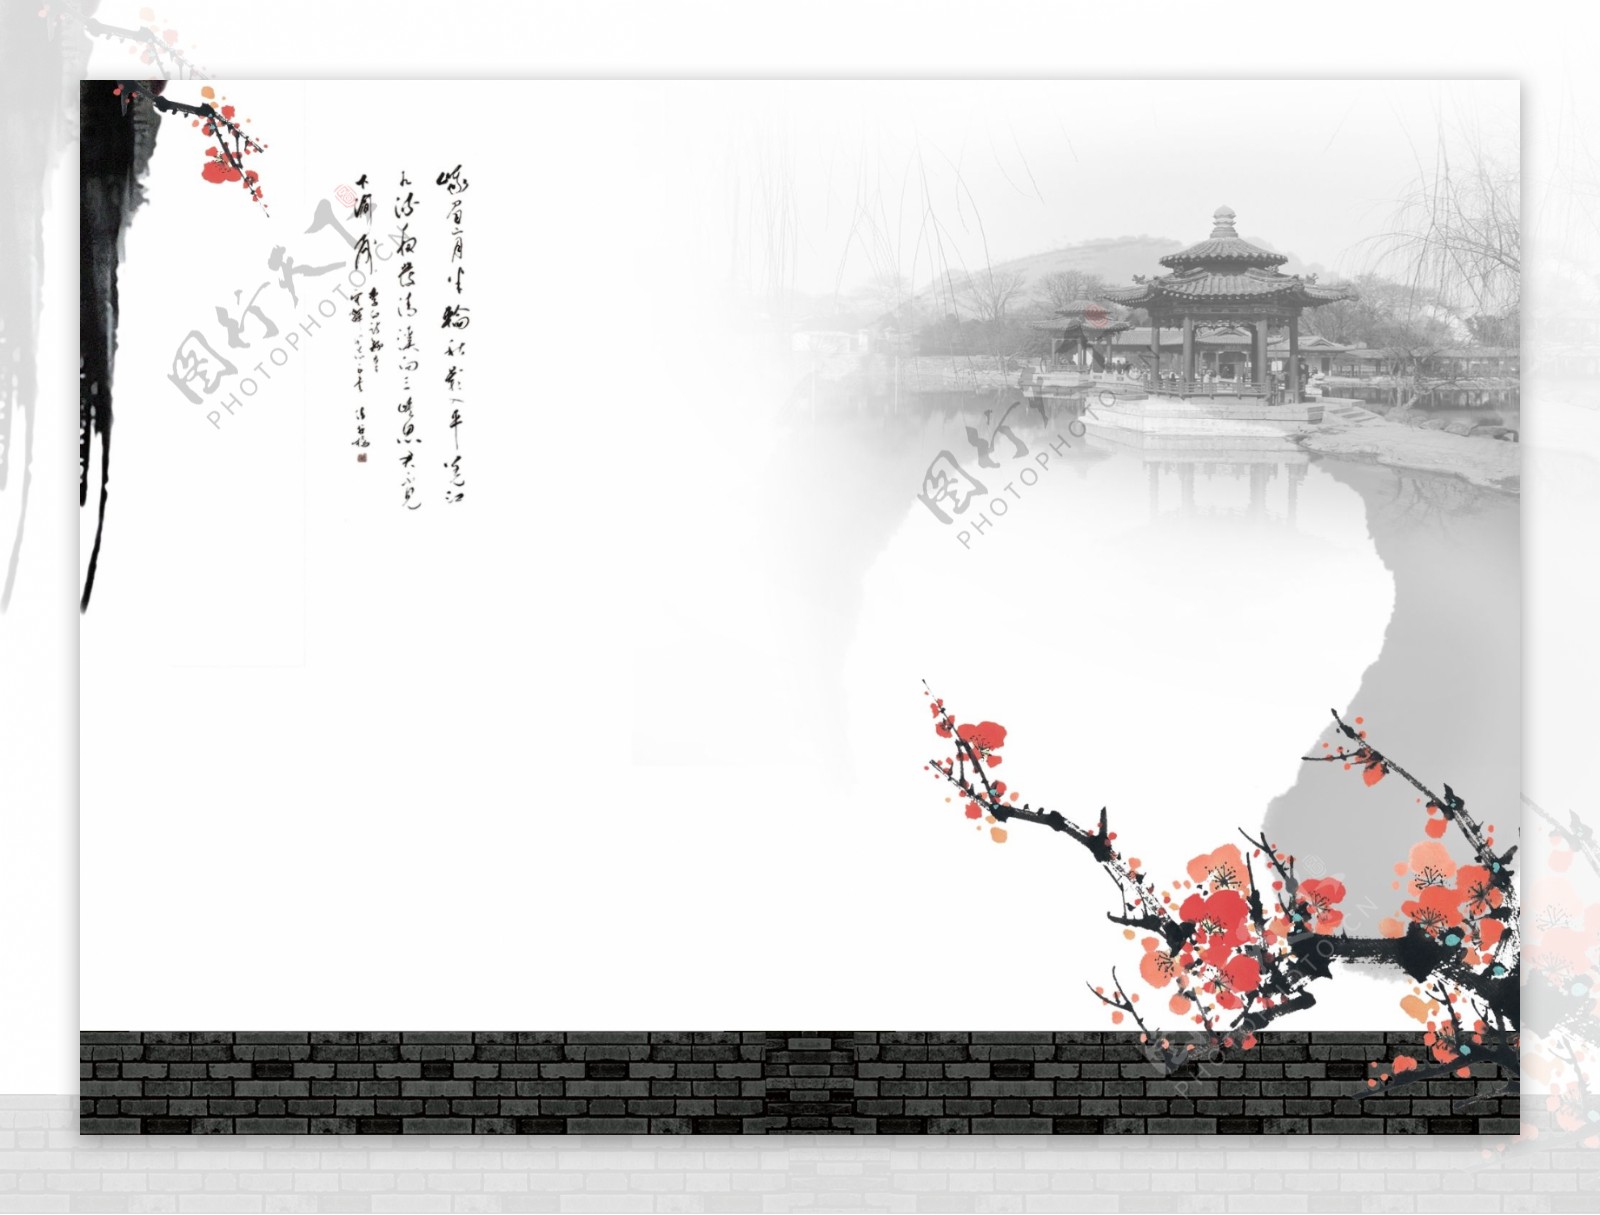 中国风水墨风格背景图片